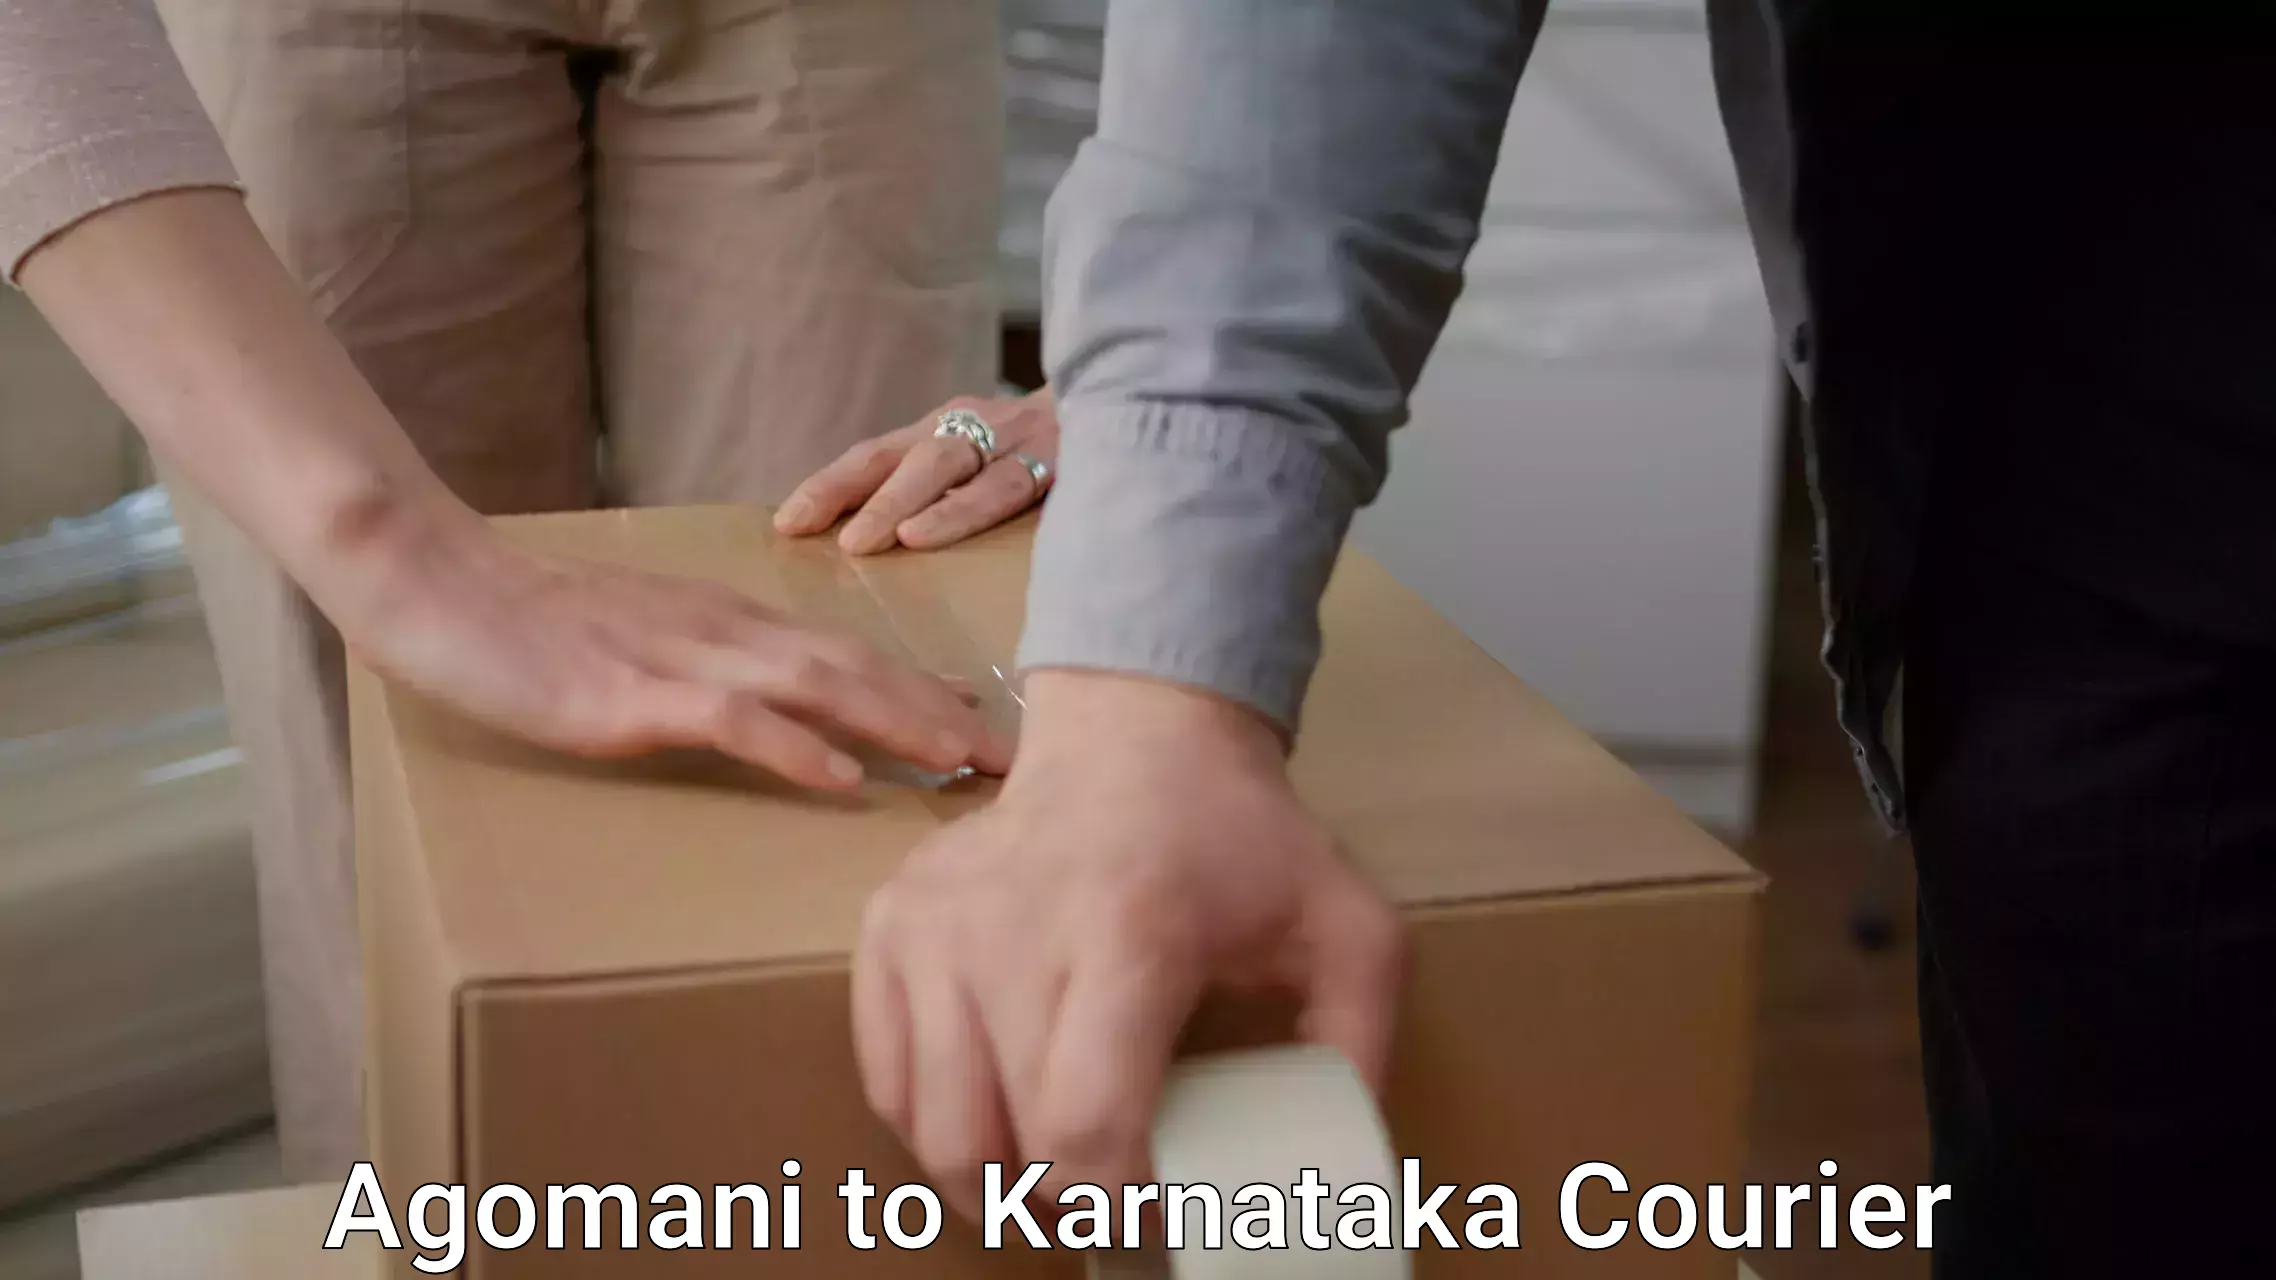 Furniture transport service Agomani to Karnataka